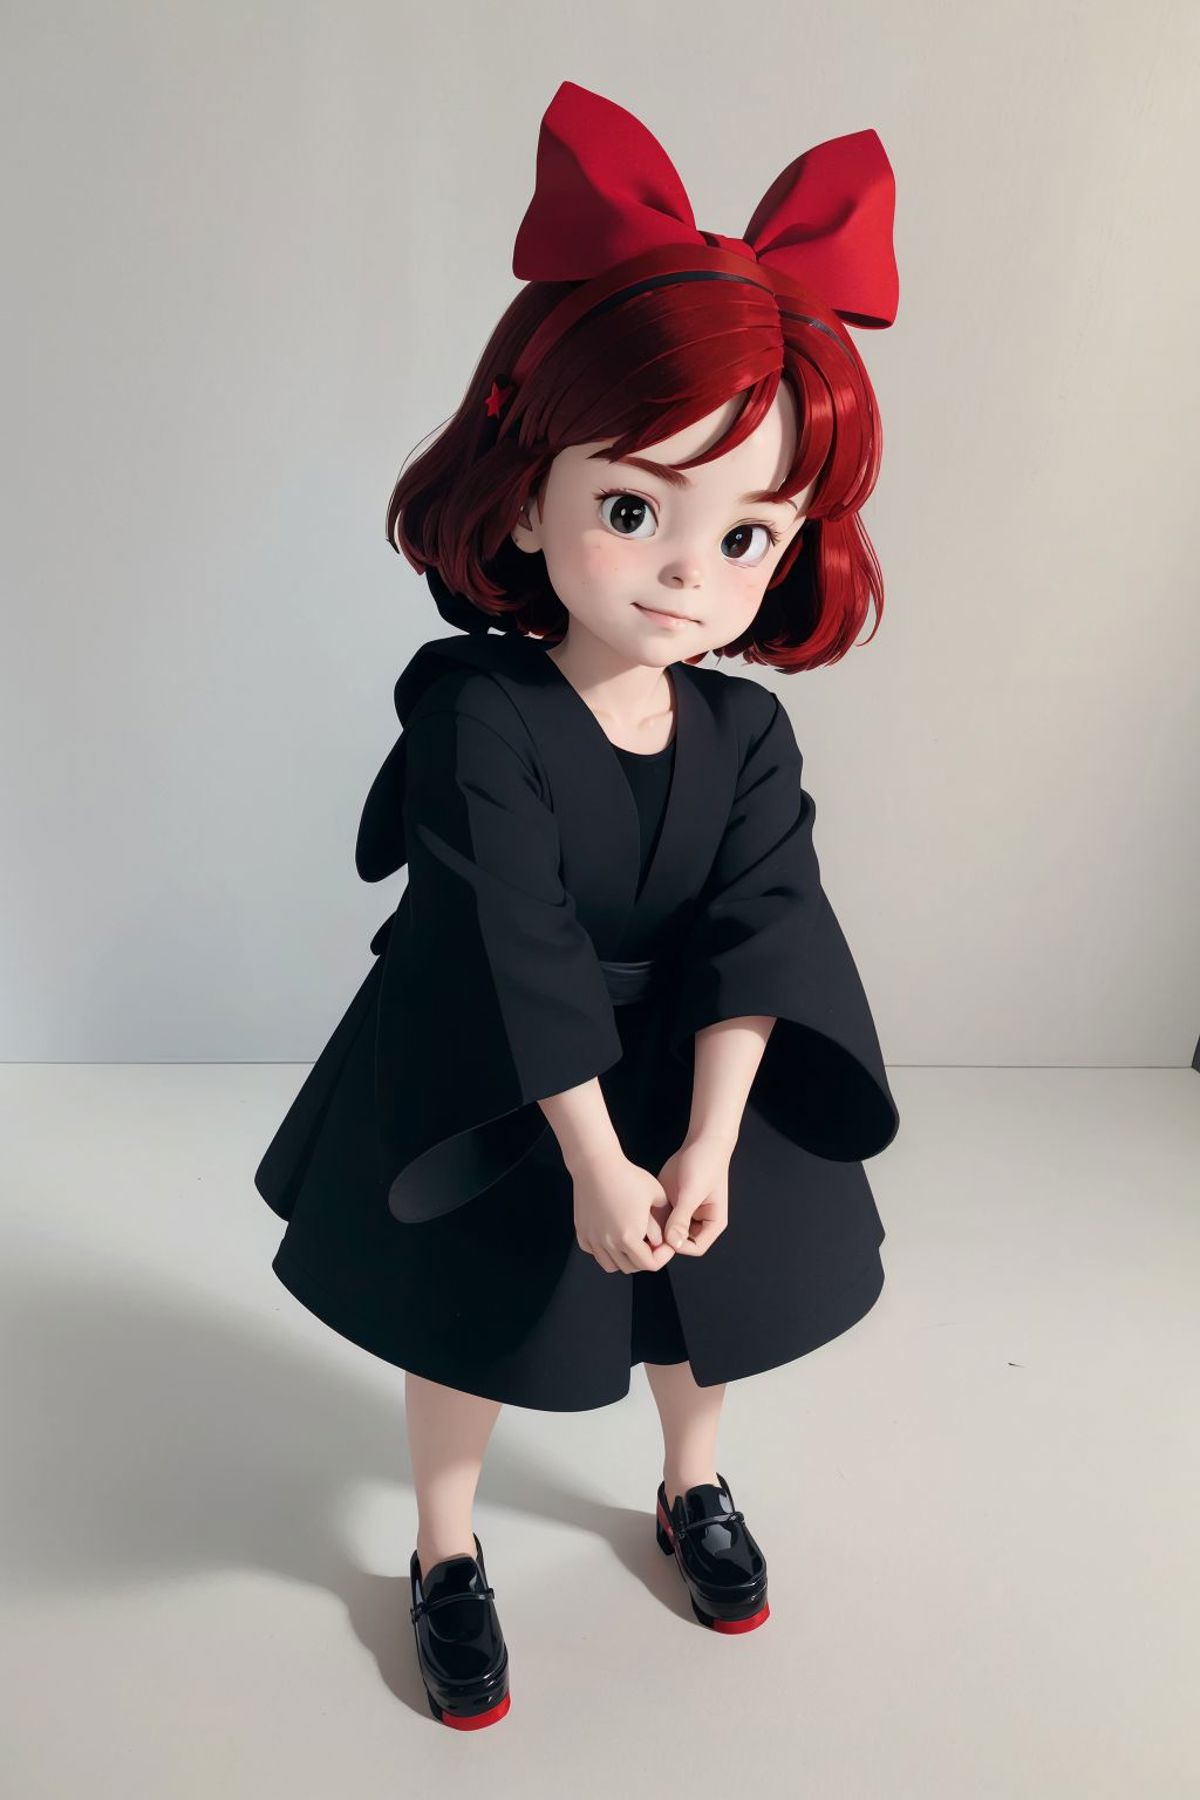 Ghibli - Kiki's Delivery Service - Kiki and Jiji image by ChaosOrchestrator